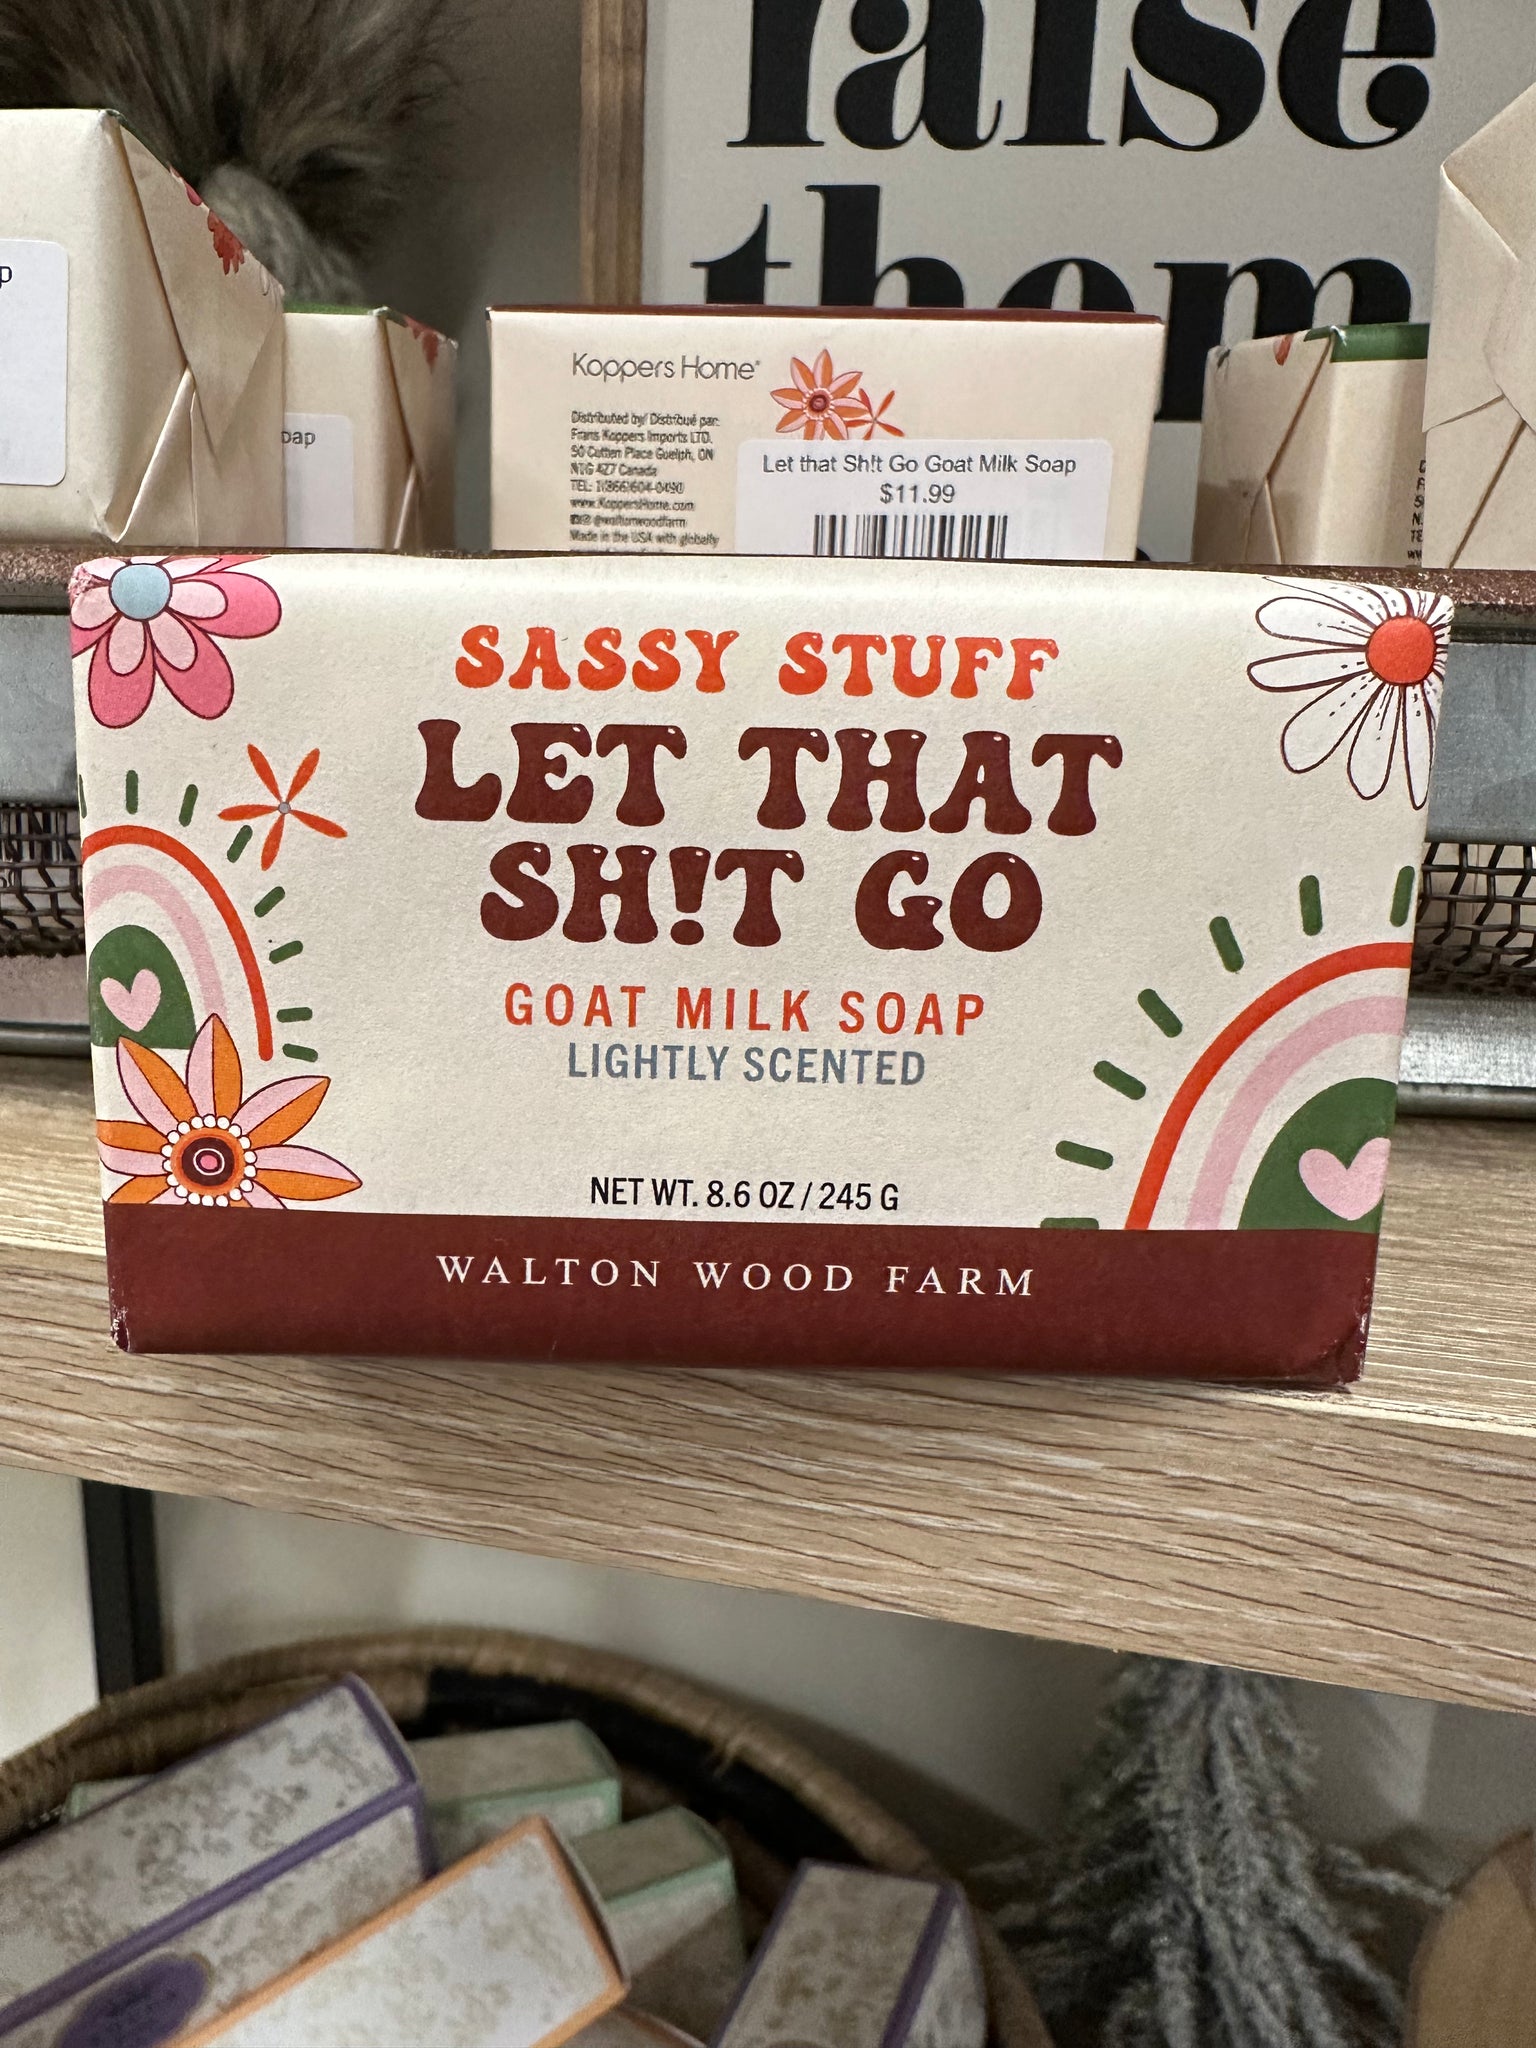 Let that Sh!t Go Goat Milk Soap